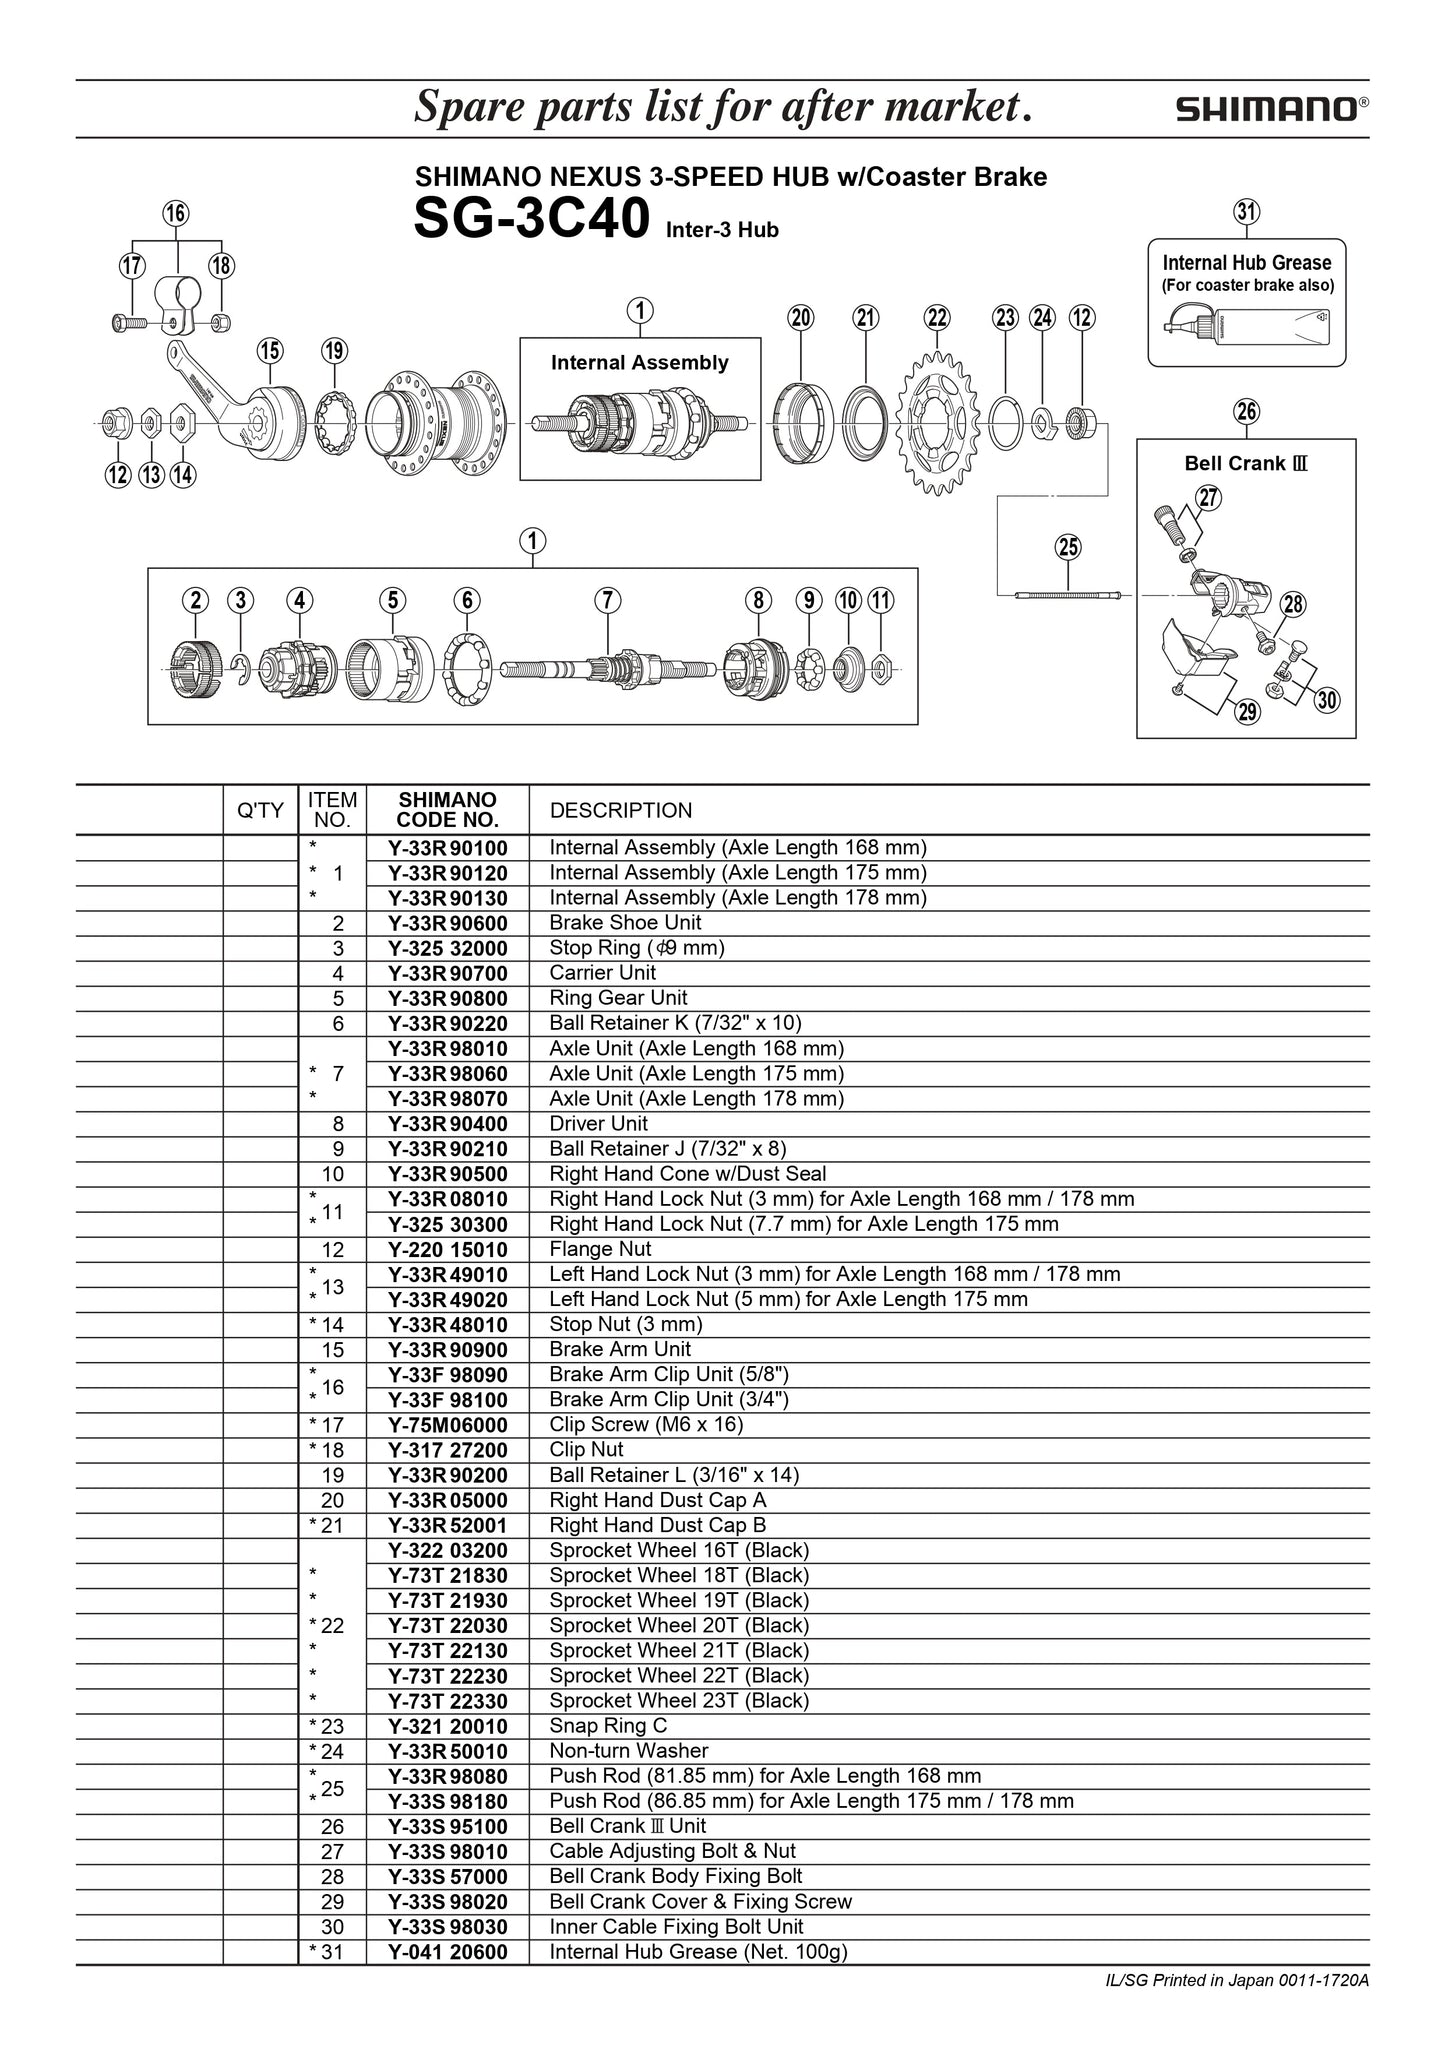 SHIMANO Nexus SG-3C40 Hub 3-Speed Ball Retainer L - 3/16" x 14 - Y33R90200-Pit Crew Cycles